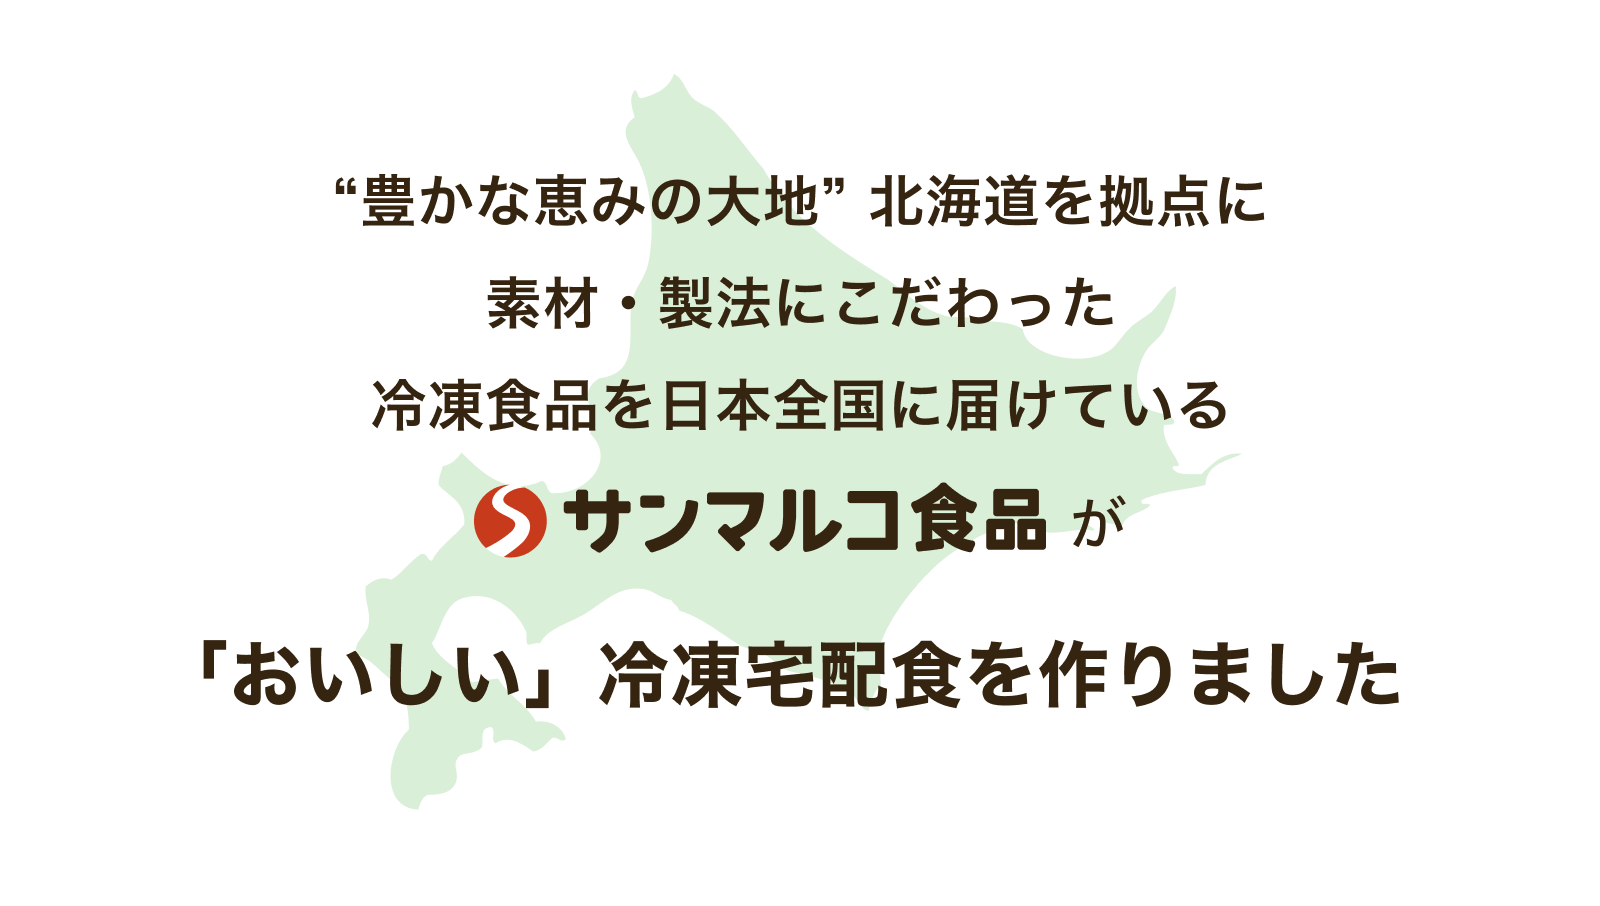 “豊かな恵みの大地” 北海道を拠点に素材・製法にこだわった冷凍食品を日本全国に届けているサンマルコ食品が「おいしい」冷凍宅配食を作りました